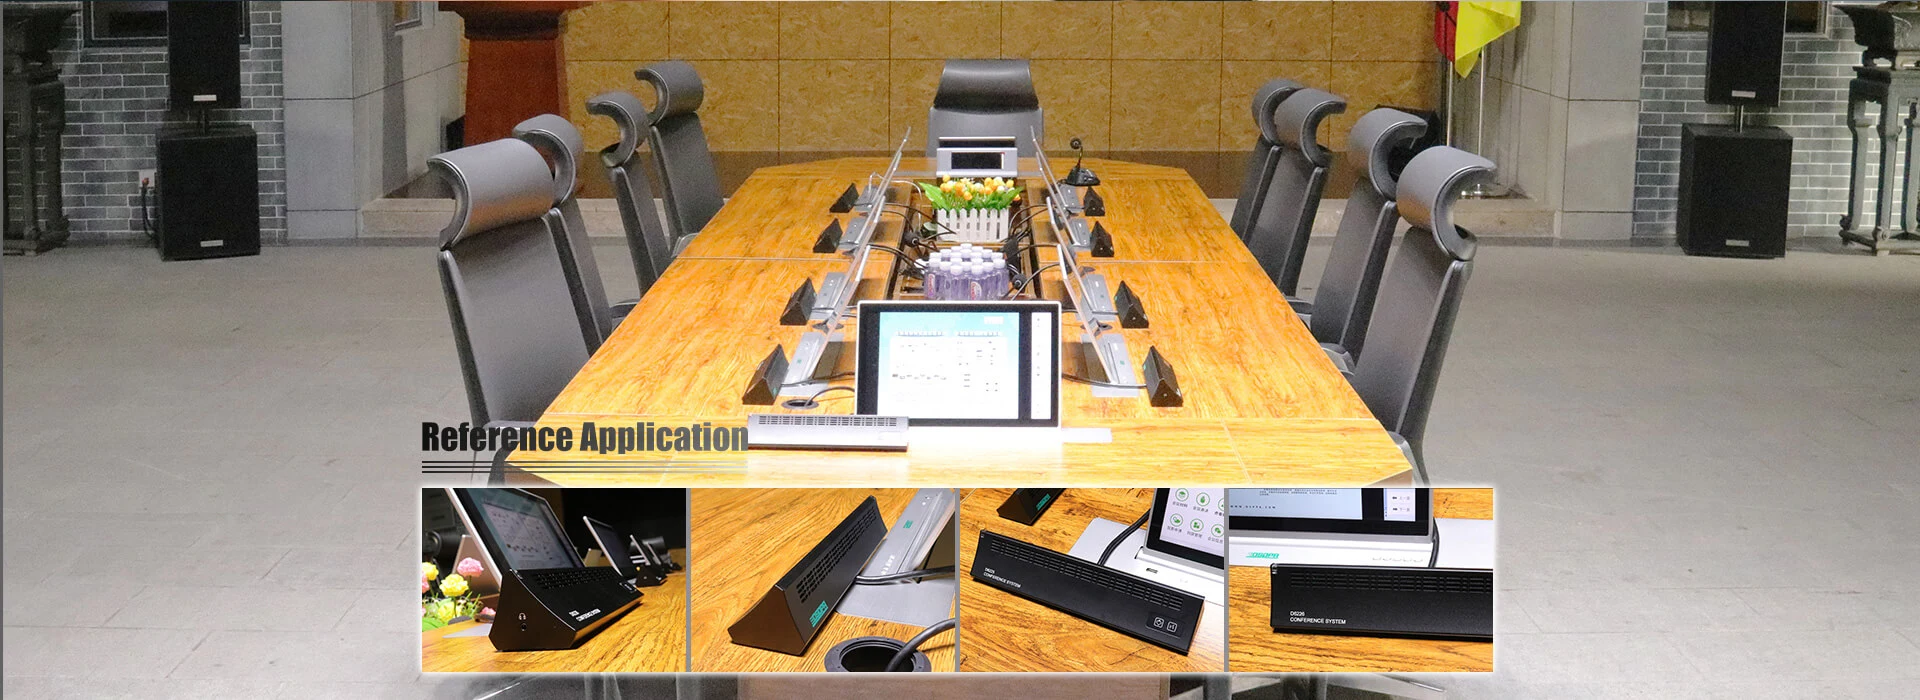 Hệ thống hội nghị kỹ thuật số toàn bộ Micro chủ tịch mảng